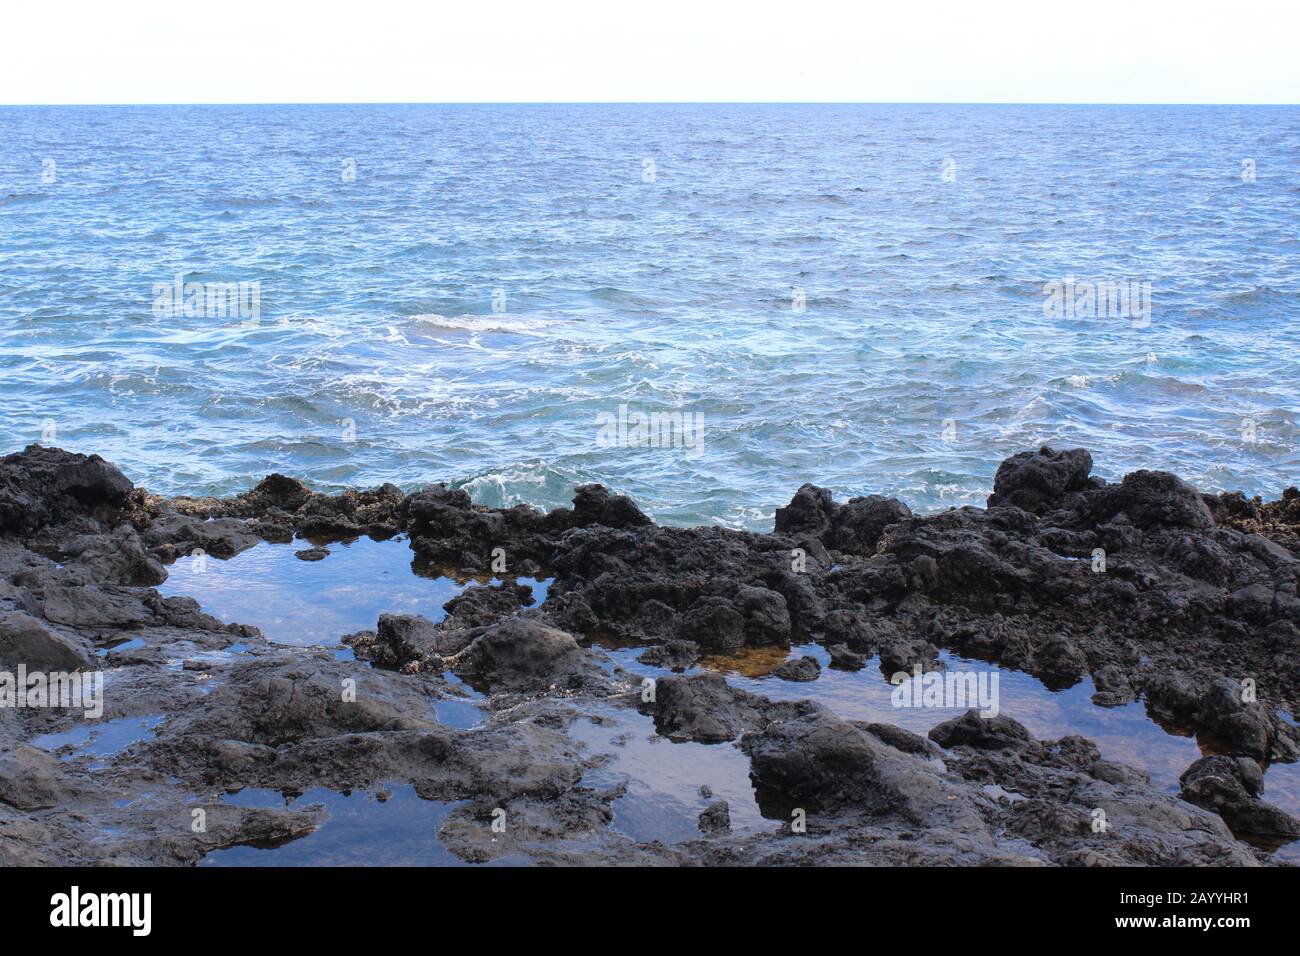 Rocas con pequeñas lagunas con reflejos, mar mediterráneo, Lanzarote, Islas Canarias. Banque D'Images